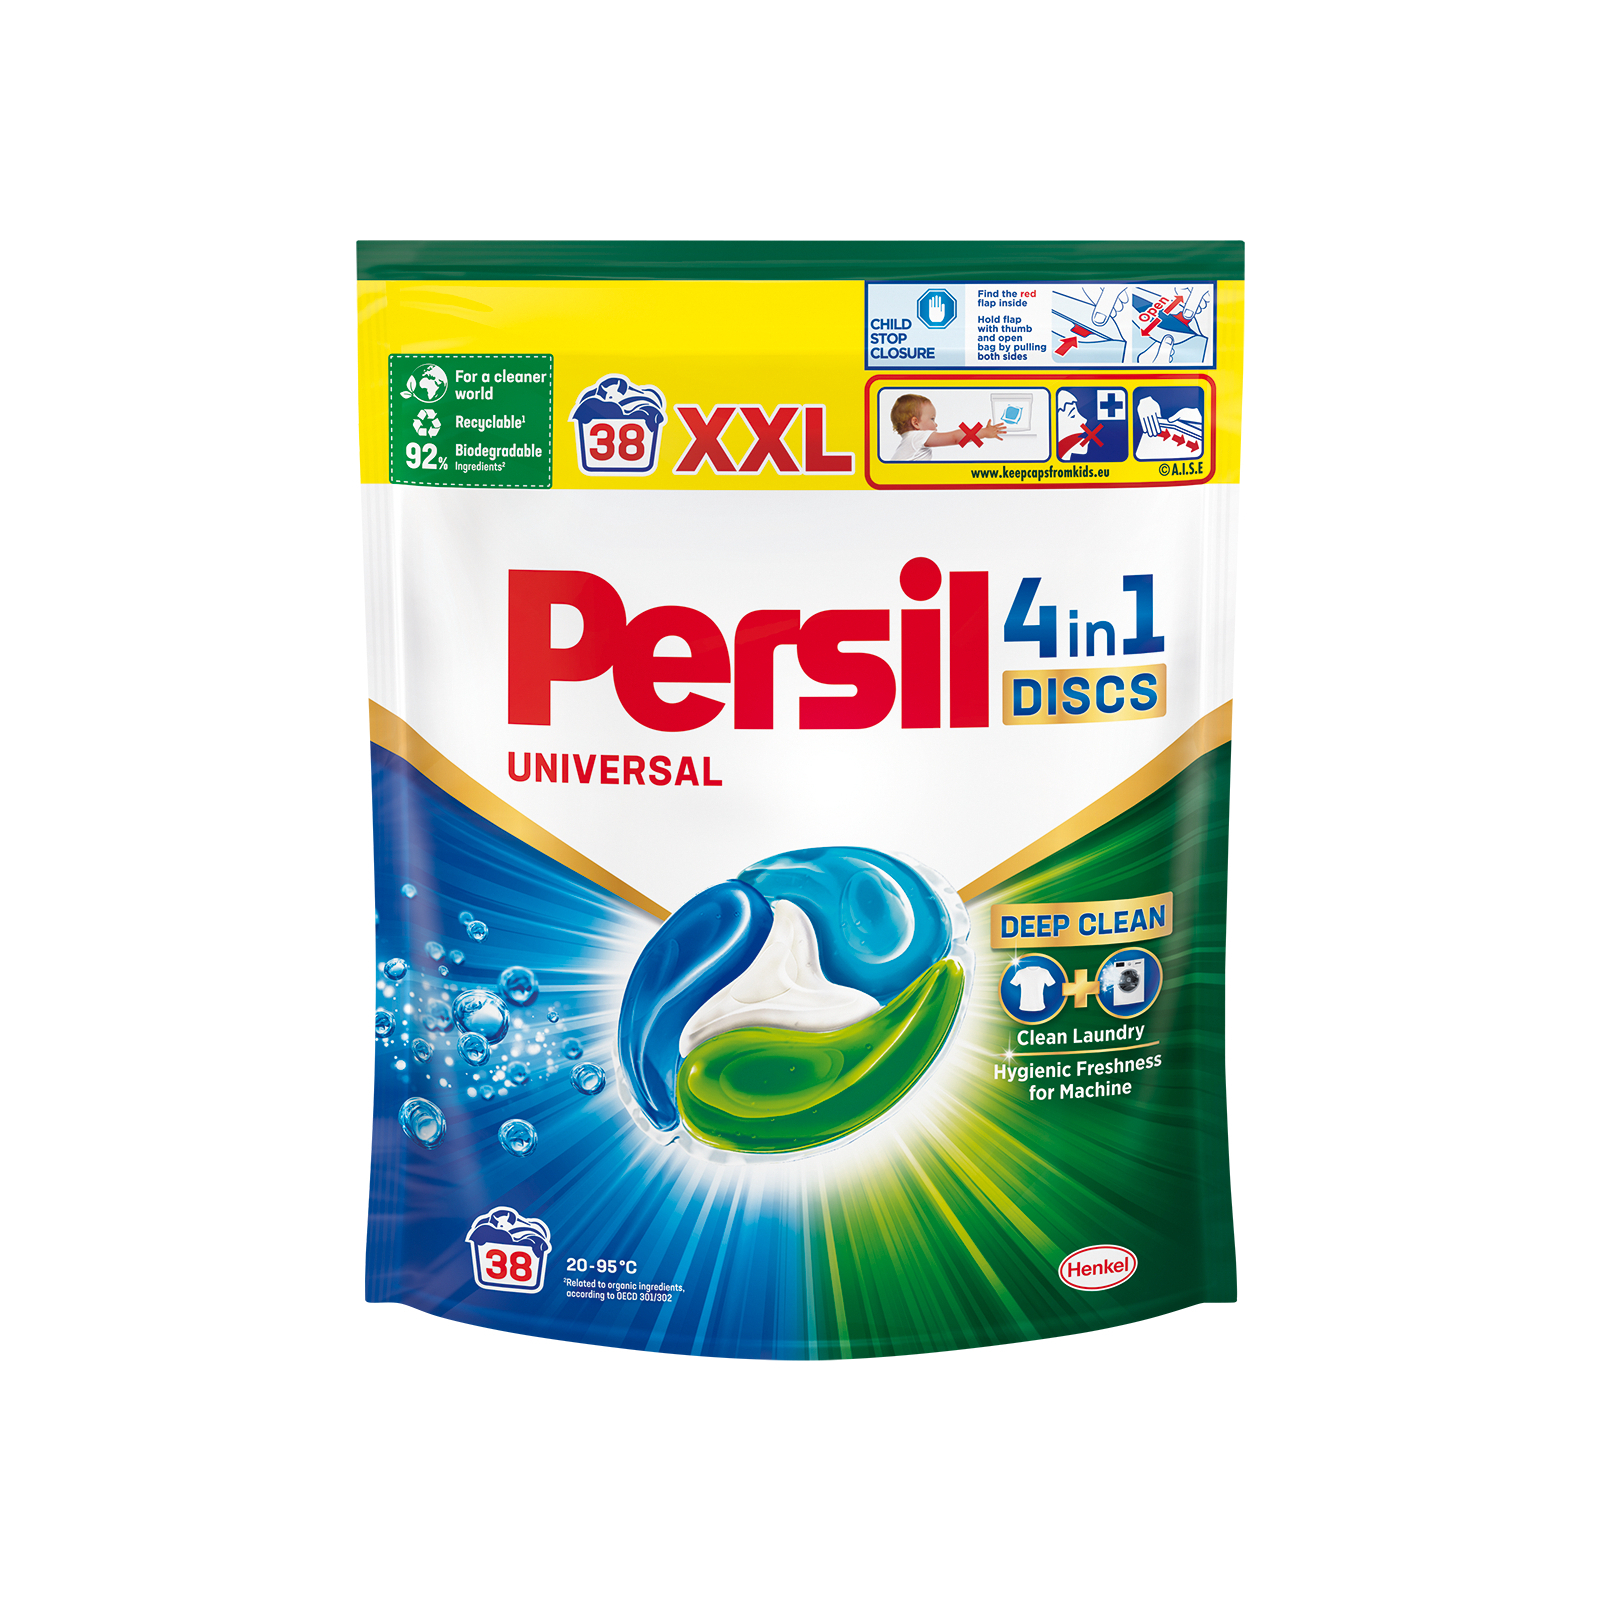 Капсулы для стирки Persil Discs Universal 38 шт. (9000101566529)